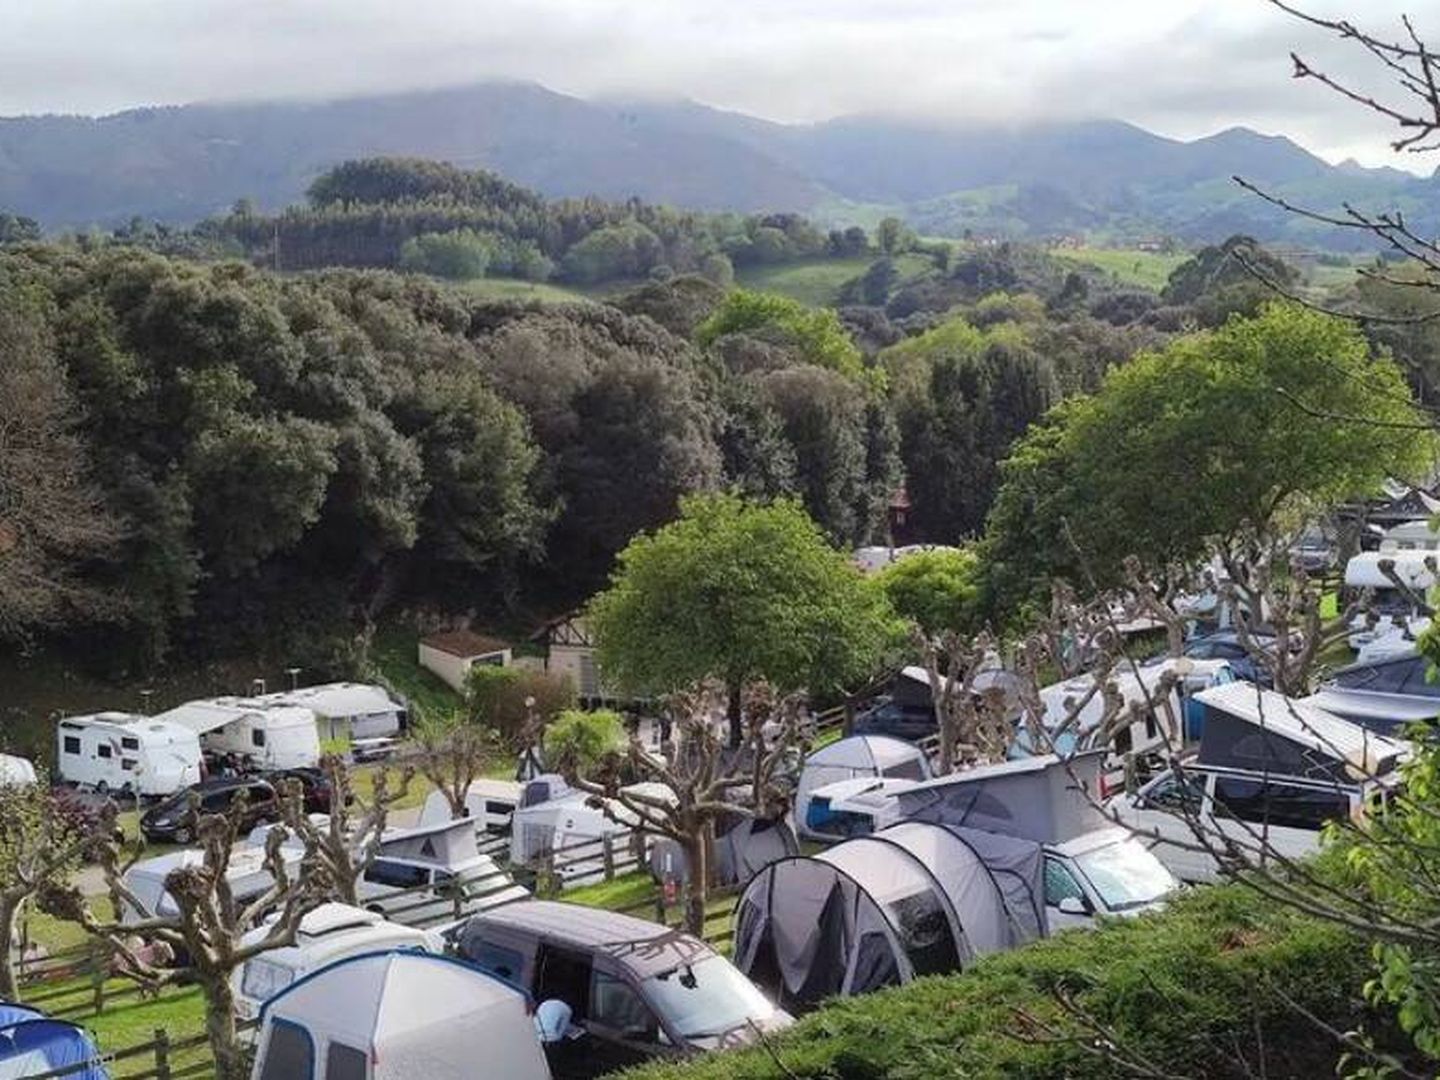 Camping Ribadesella, Cantabria